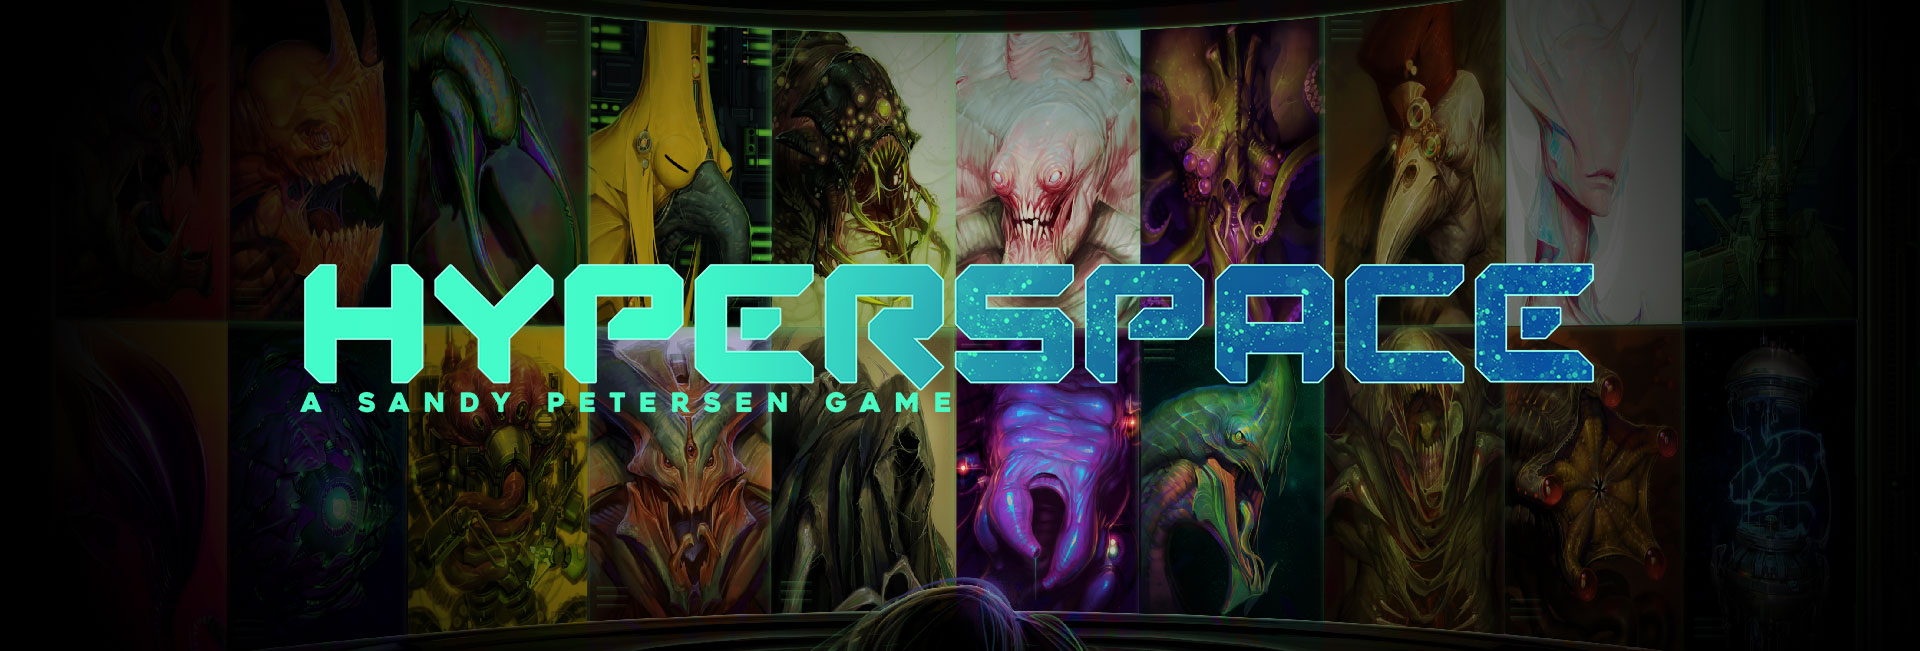 Hyperspace Petersen Games